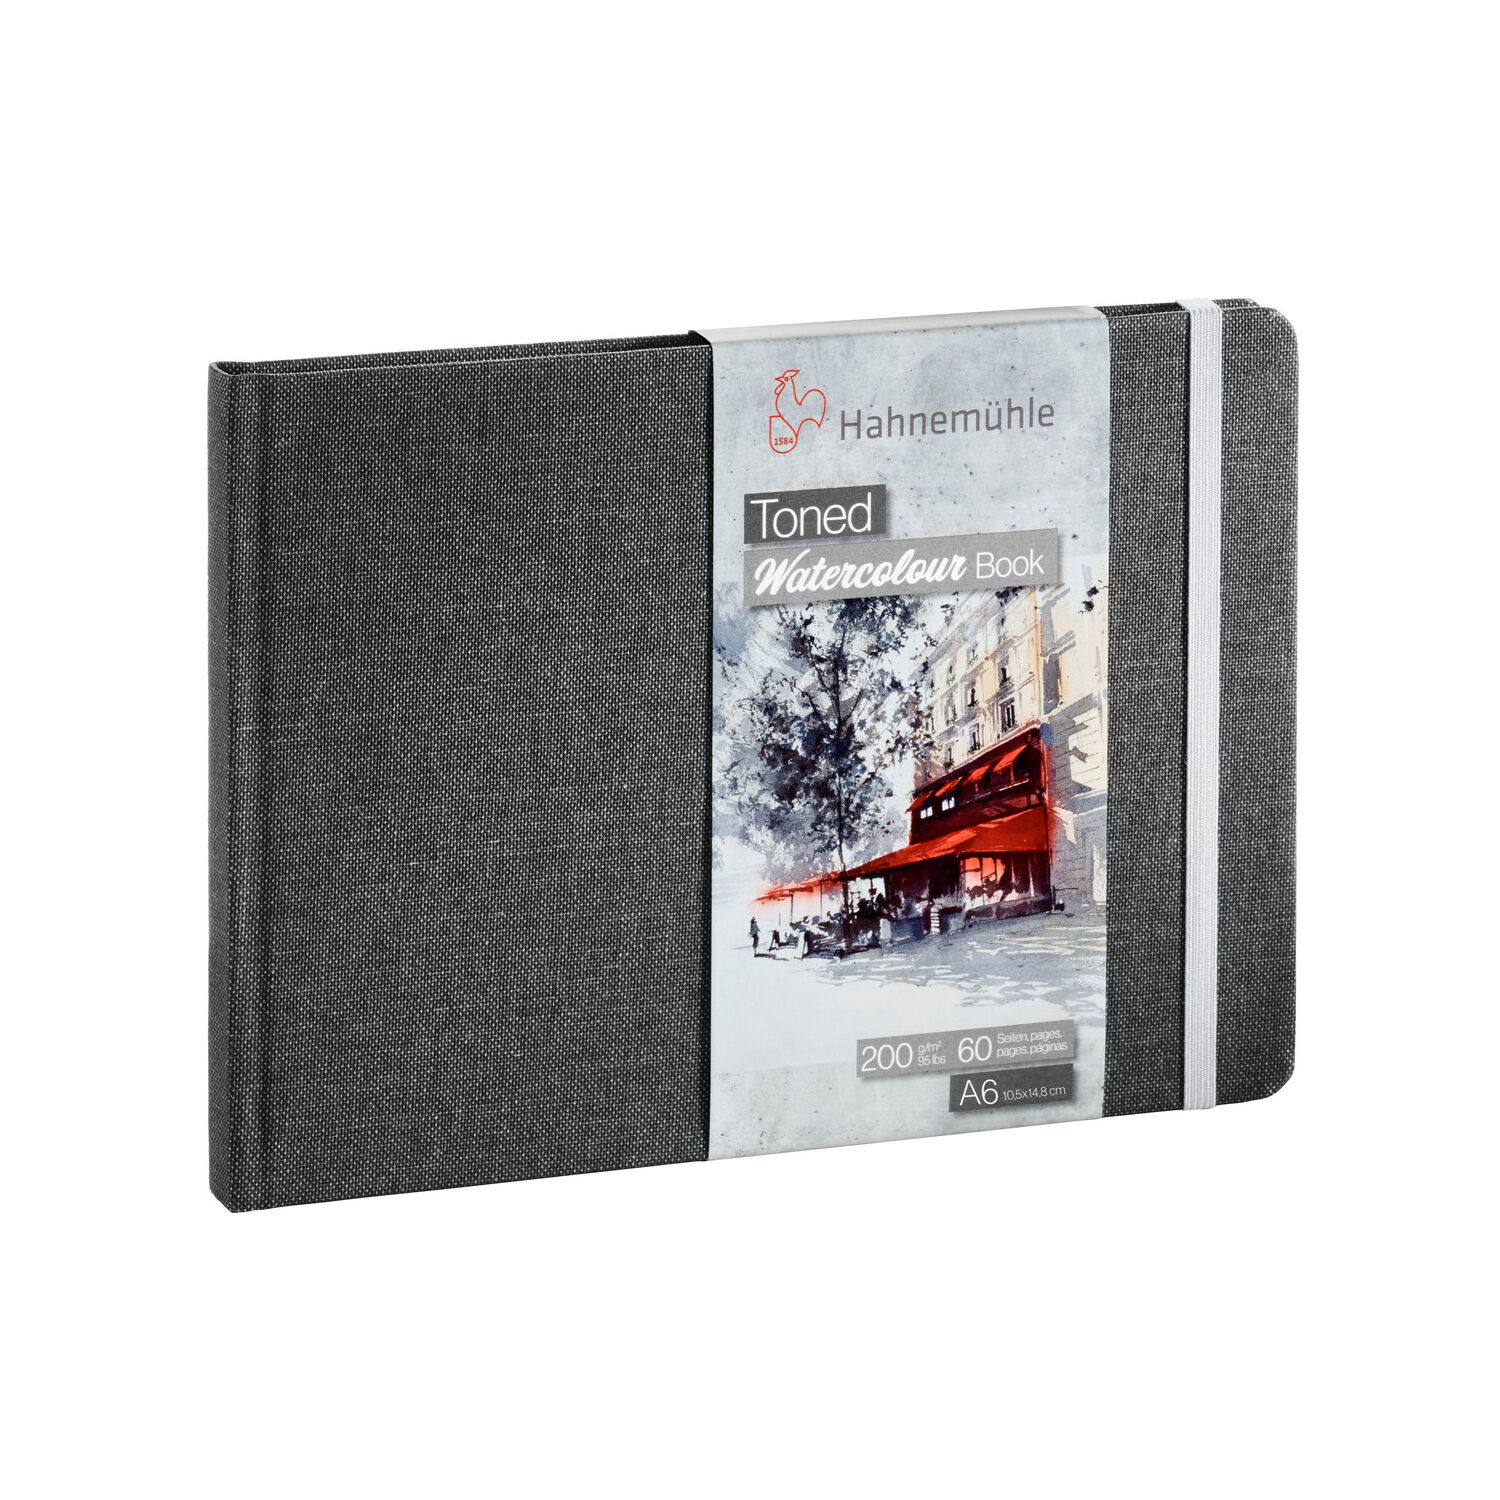 NEU Toned Watercolour Book Grey, 200g/m, DIN A6 Landschaftsformat, 60 Seiten